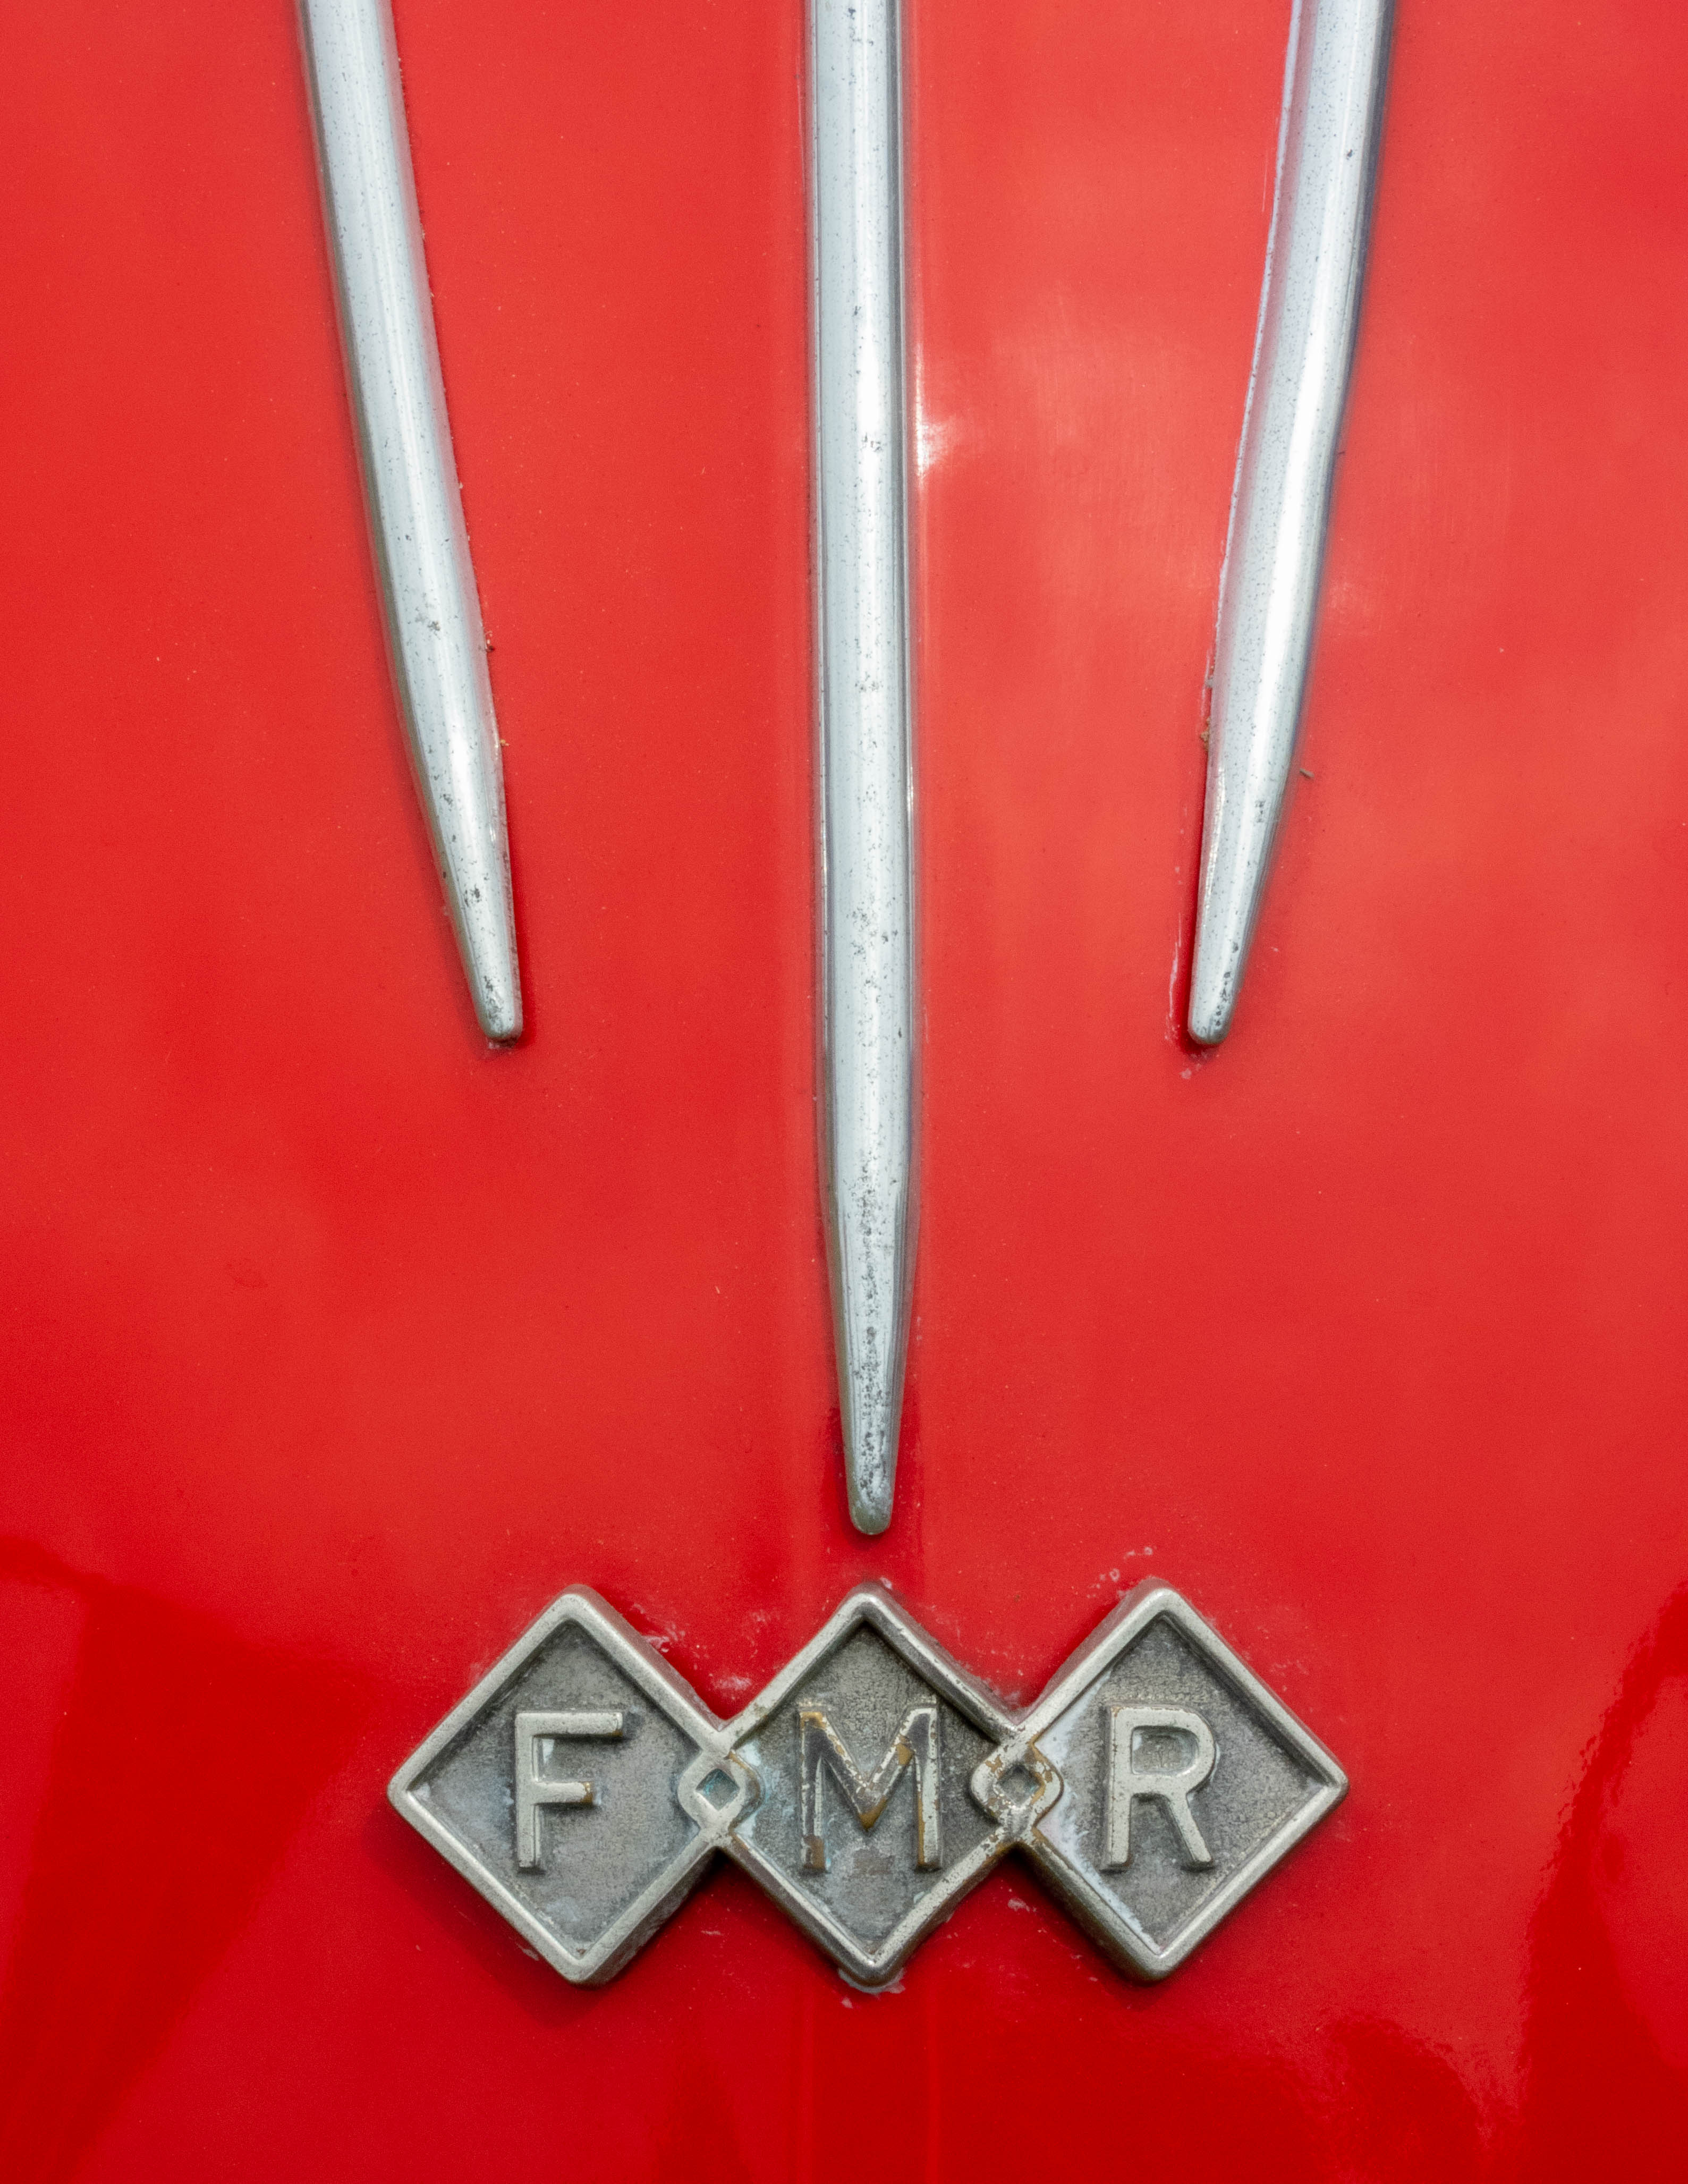 FMR (Messerschmitt)